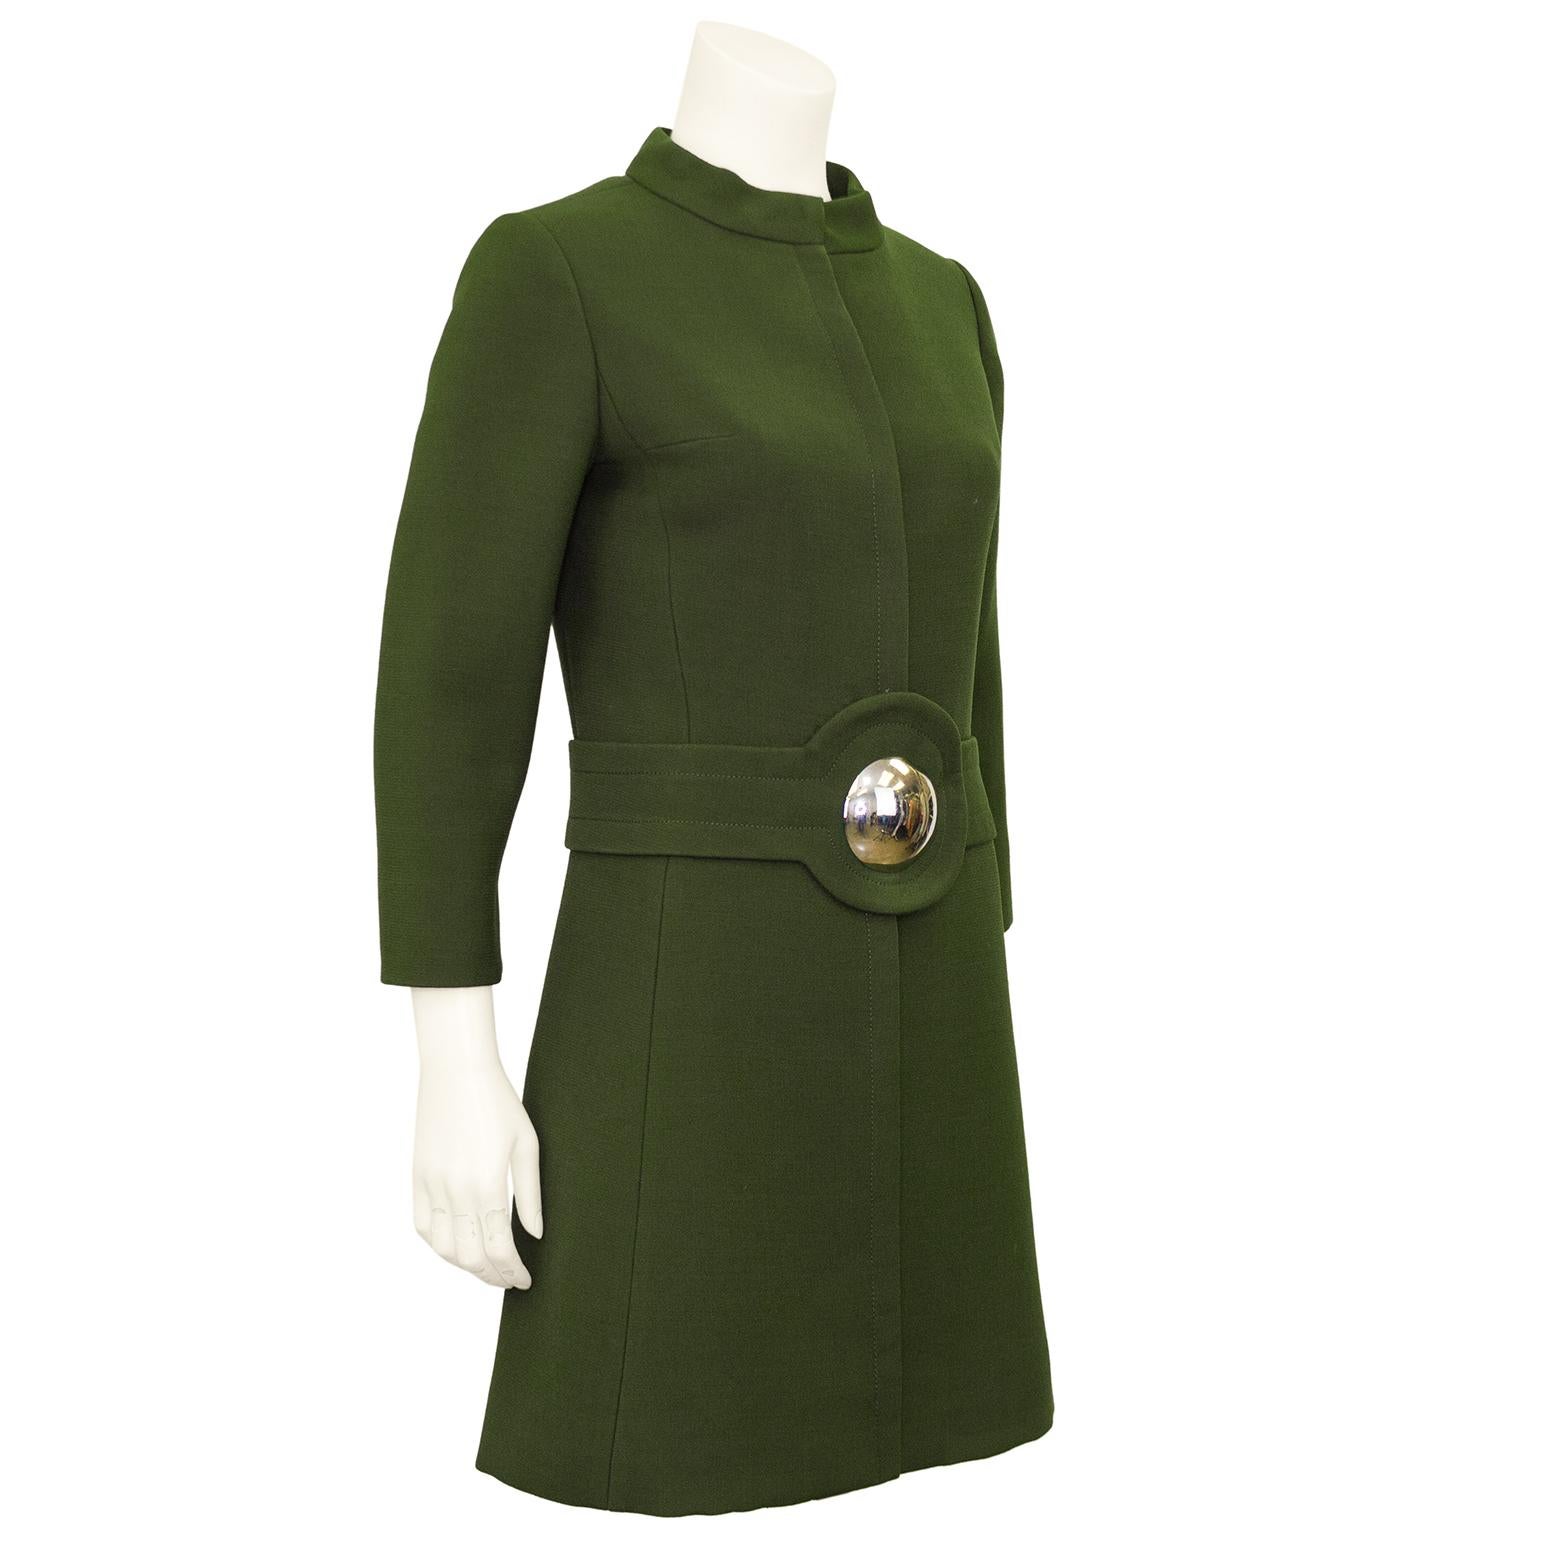 Pierre Cardin aus den 1960er Jahren ist der schickste aller Schickimickis, und dieses olivgrüne Wollmantelkleid ist da keine Ausnahme. Shiftform mit Mandarinenkragen, armbandlangen Ärmeln und einer verdeckten Knopfleiste in der Mittelnaht. Großer